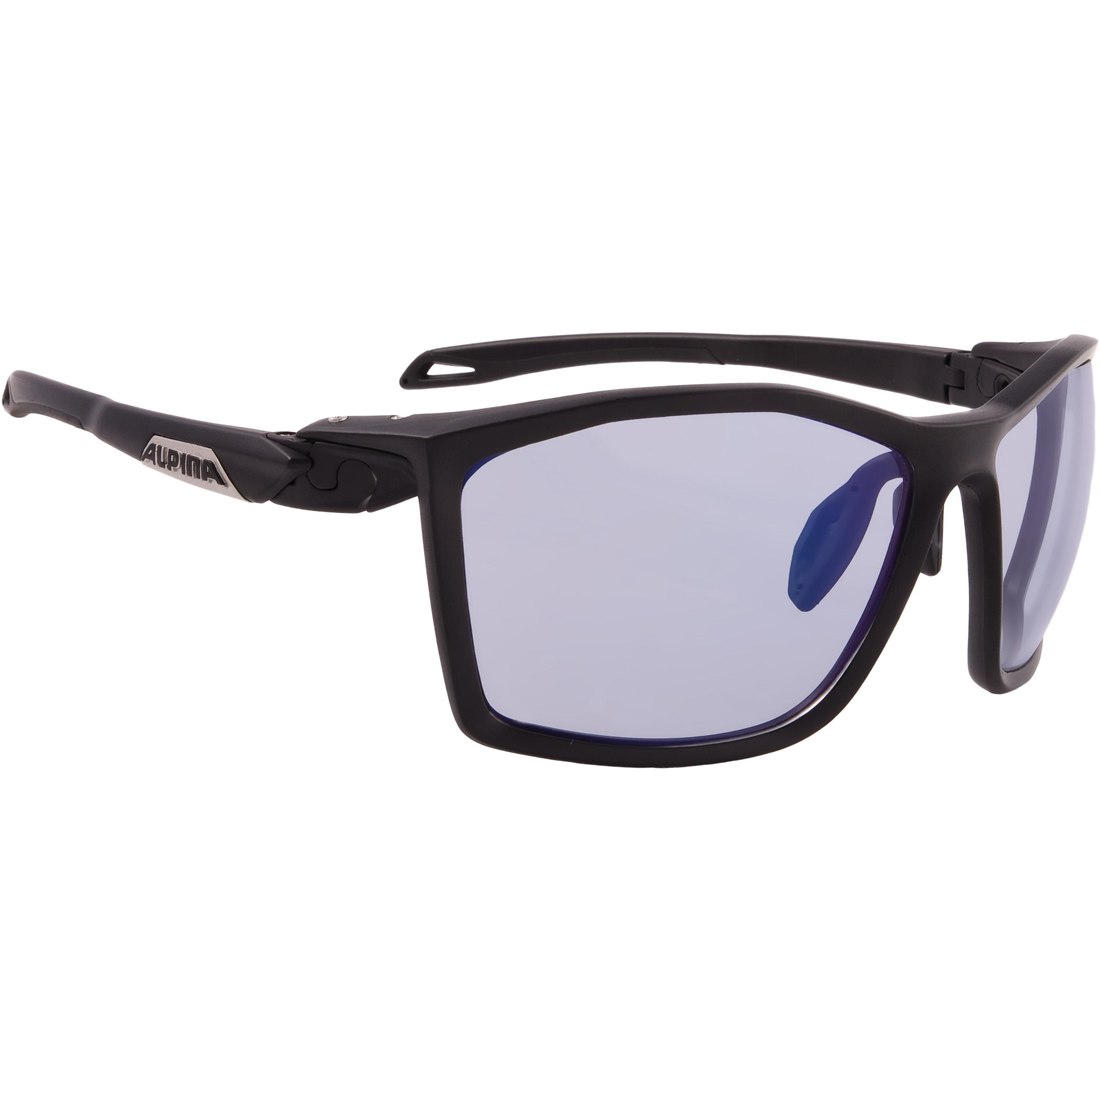 Productfoto van Alpina Twist Five V Glasses - black matt/Varioflex Blue mirror